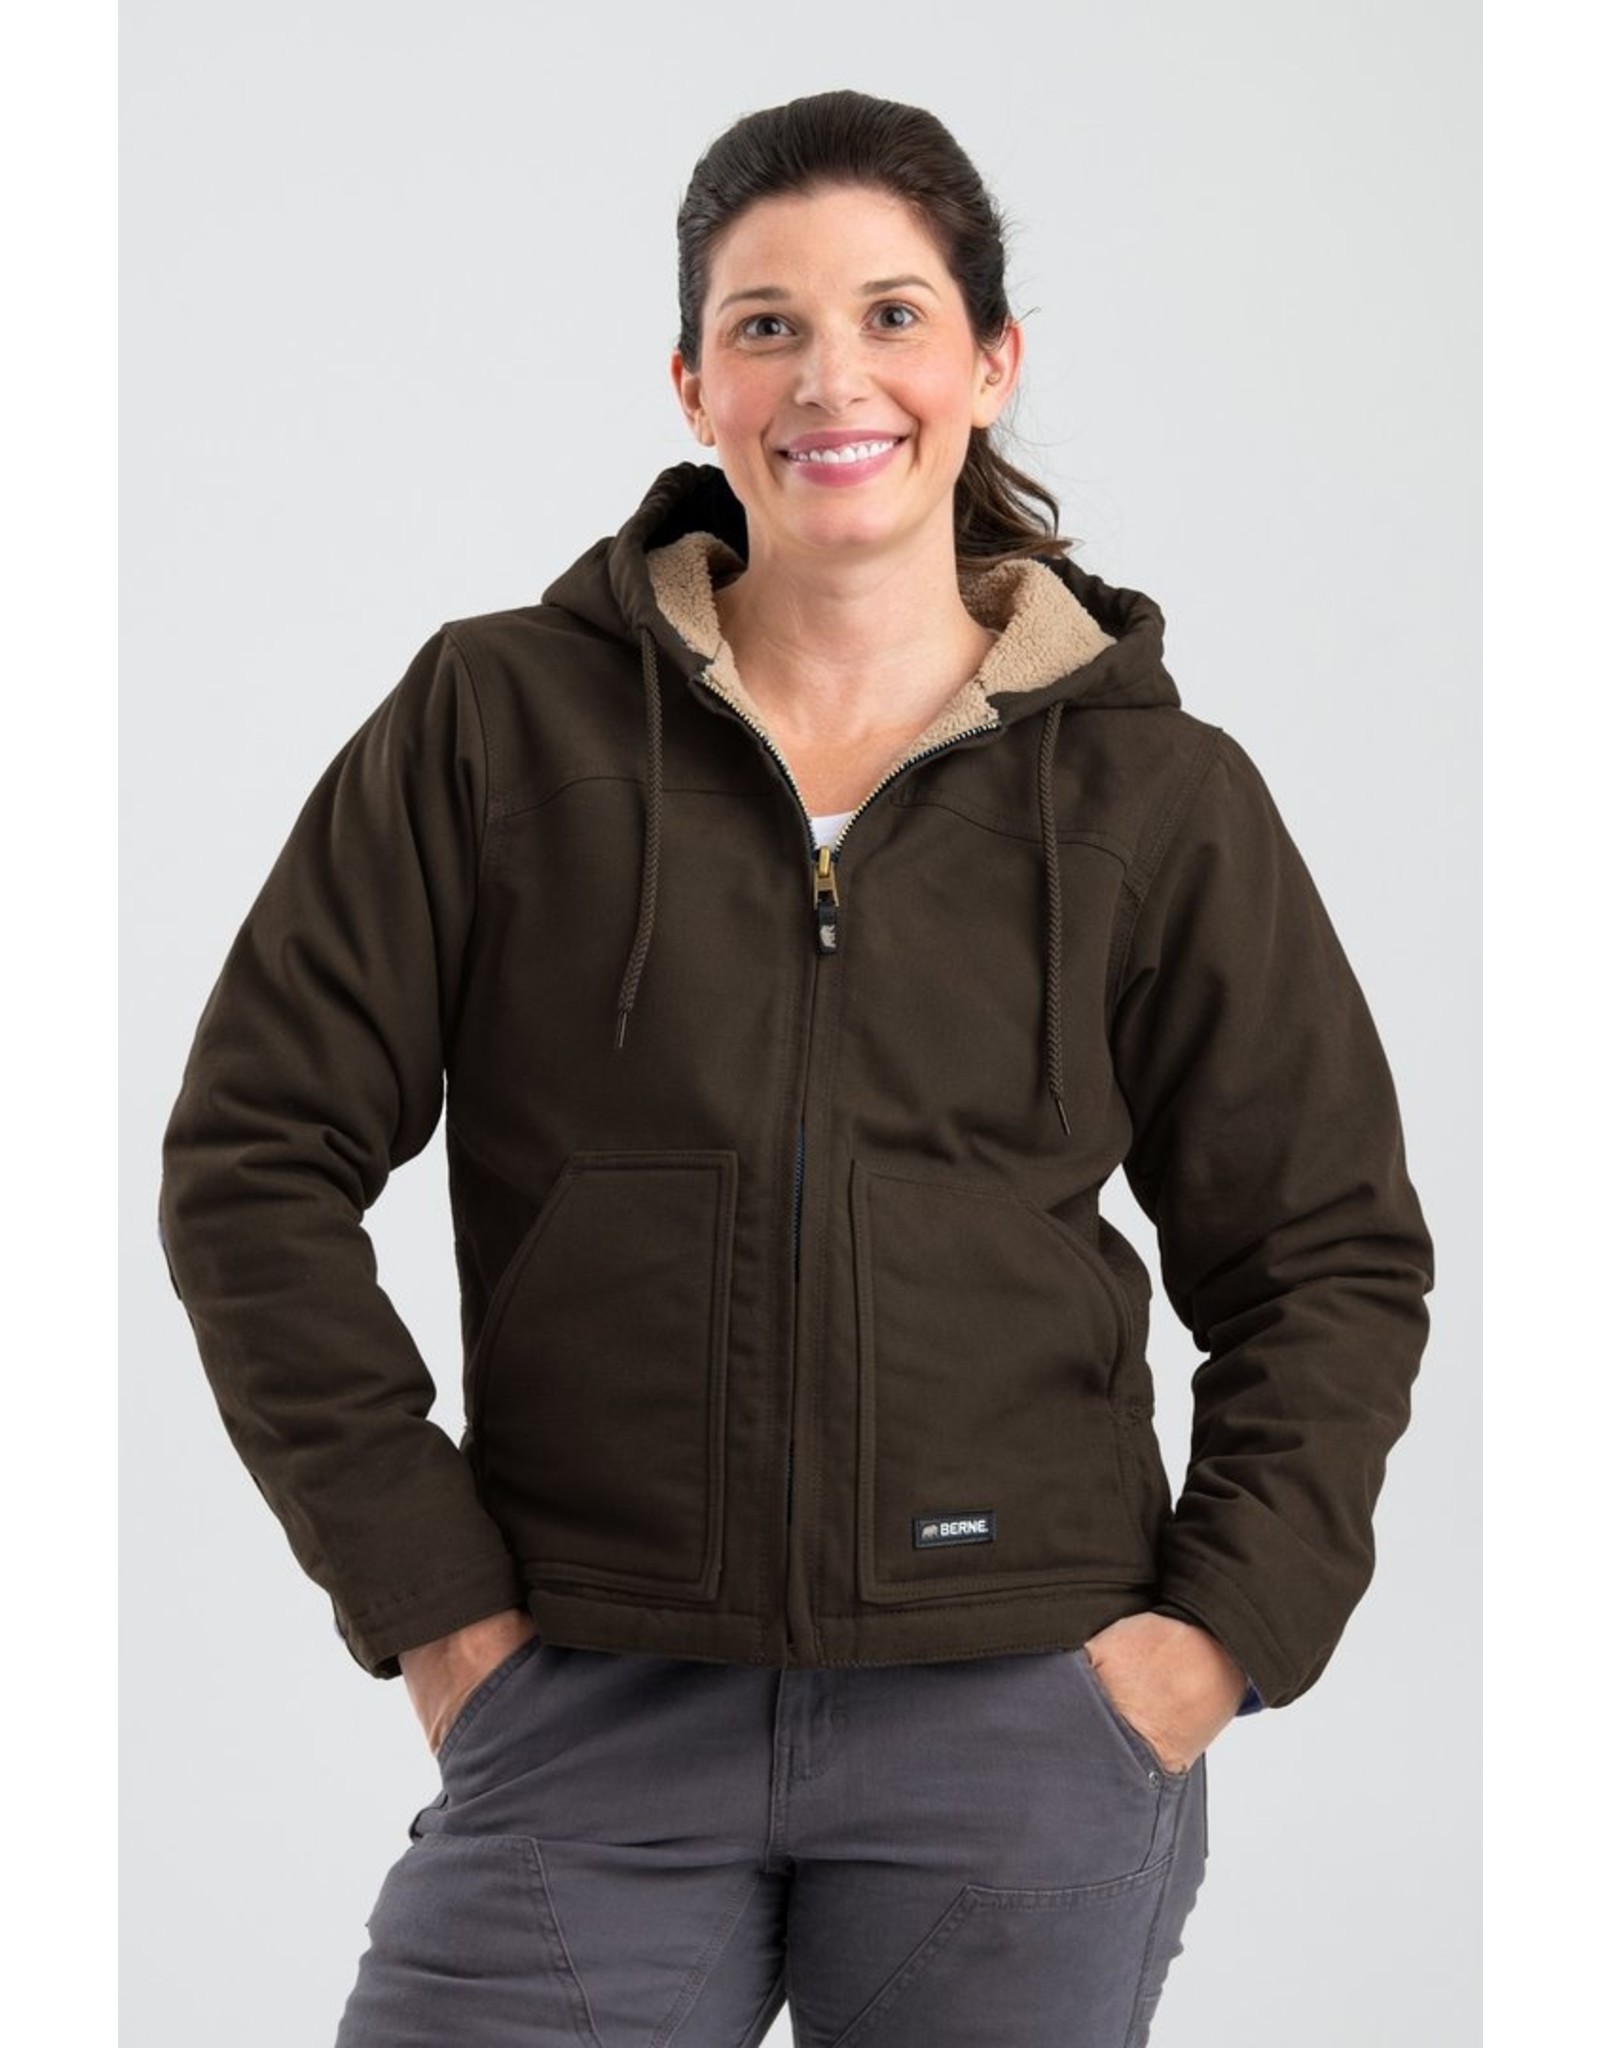 Berne Women's Sherpa-Lined Softstone WHJ43 Duck Hooded Jacket